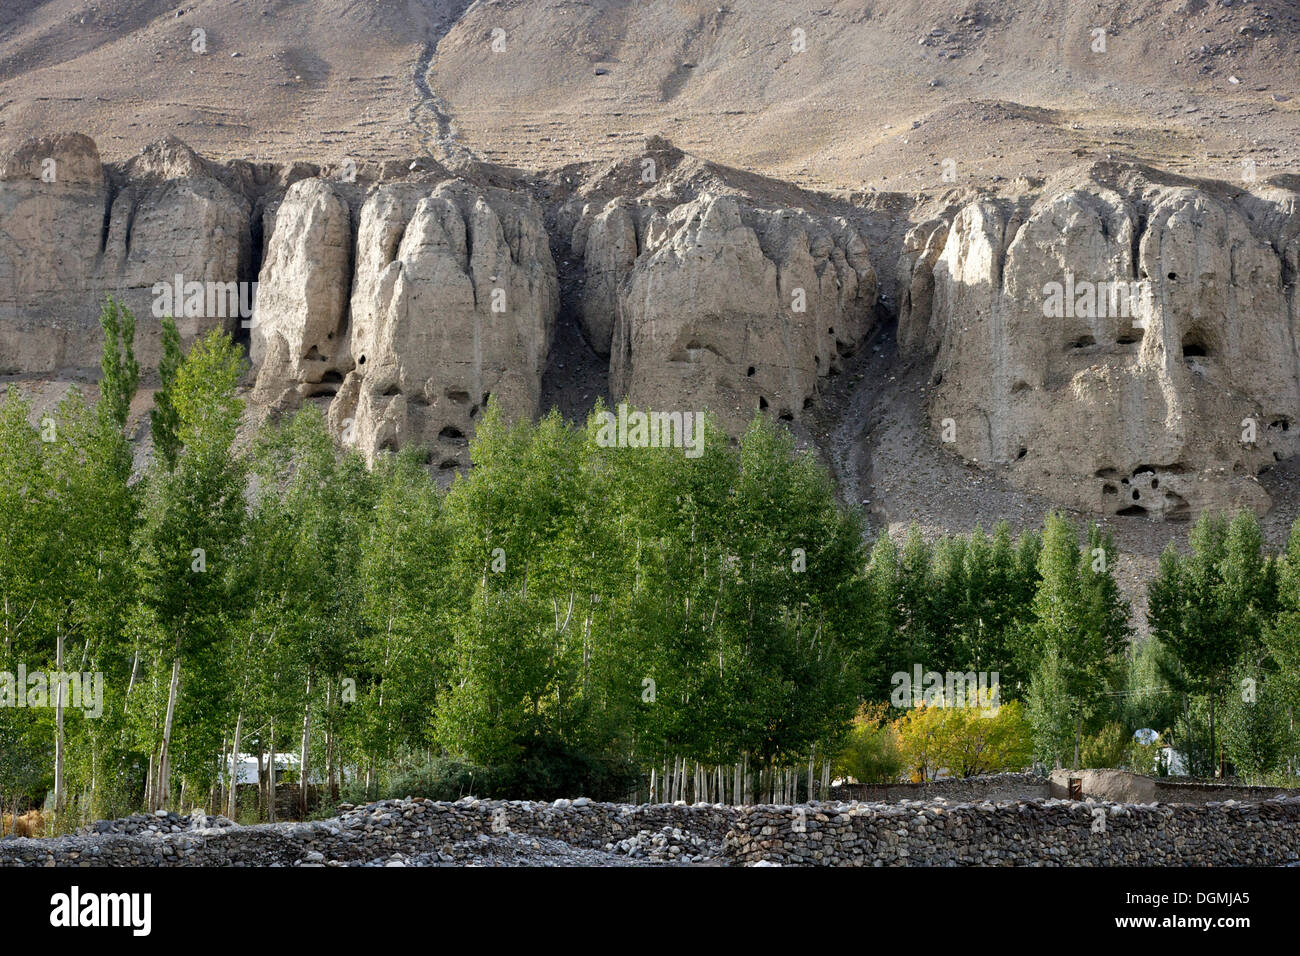 Rocks near Rachiv, Pamir region, Tajikistan, Central Asia Stock Photo